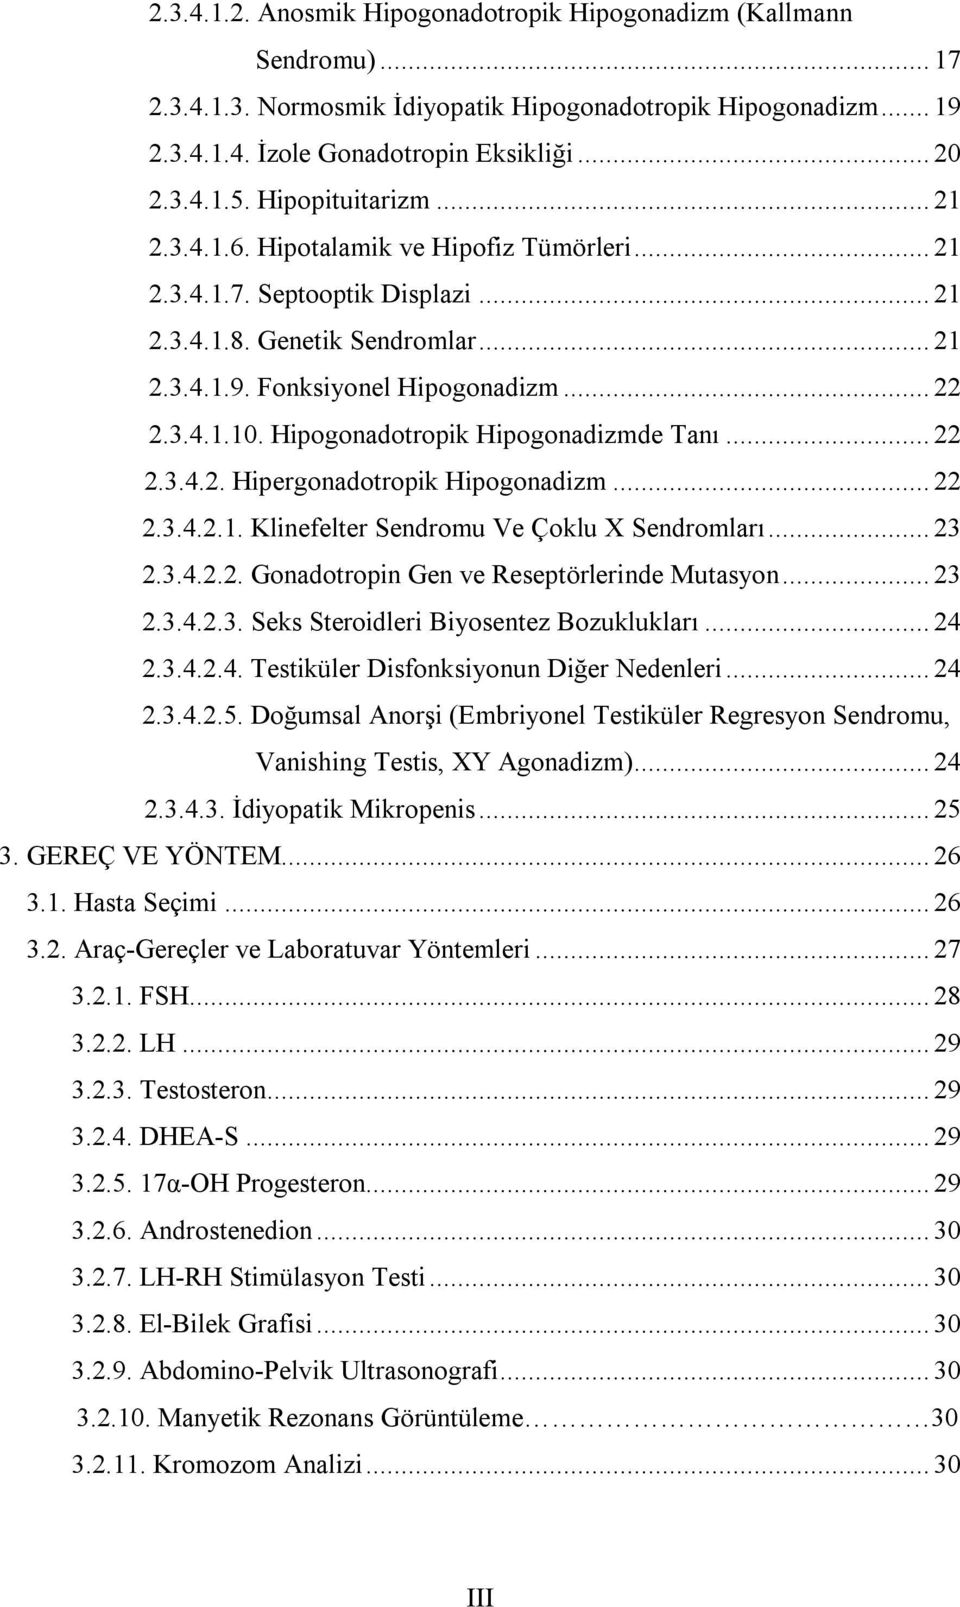 Hipogonadotropik Hipogonadizmde Tanı... 22 2.3.4.2. Hipergonadotropik Hipogonadizm... 22 2.3.4.2.1. Klinefelter Sendromu Ve Çoklu X Sendromları... 23 2.3.4.2.2. Gonadotropin Gen ve Reseptörlerinde Mutasyon.